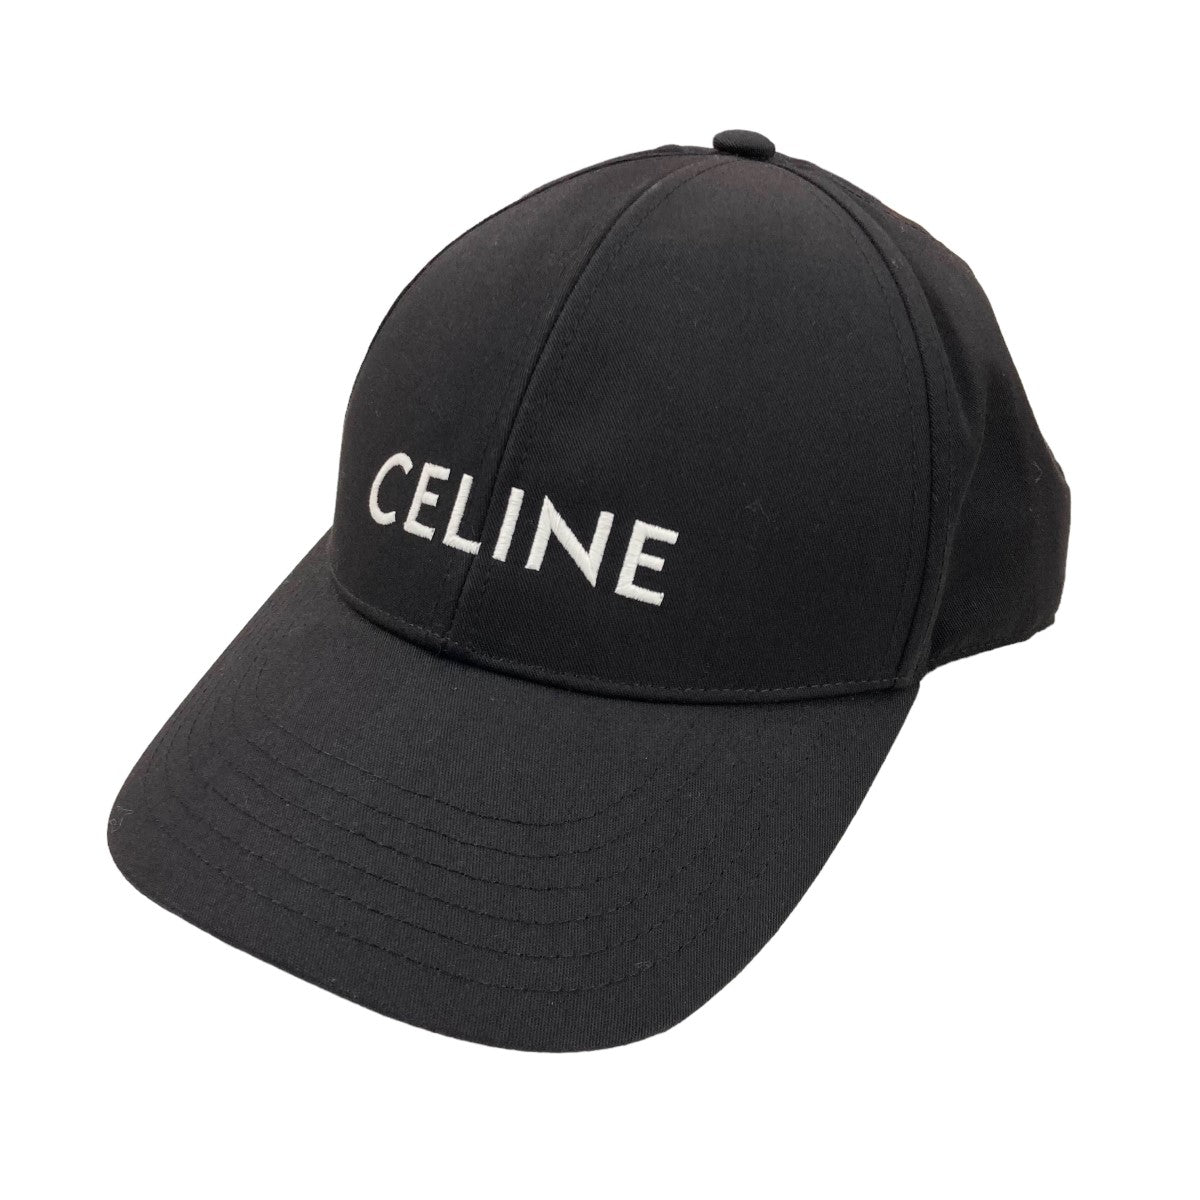 CELINE(セリーヌ) ロゴ刺繍ベースボールキャップ 2AUA1242N 2AUA1242N 